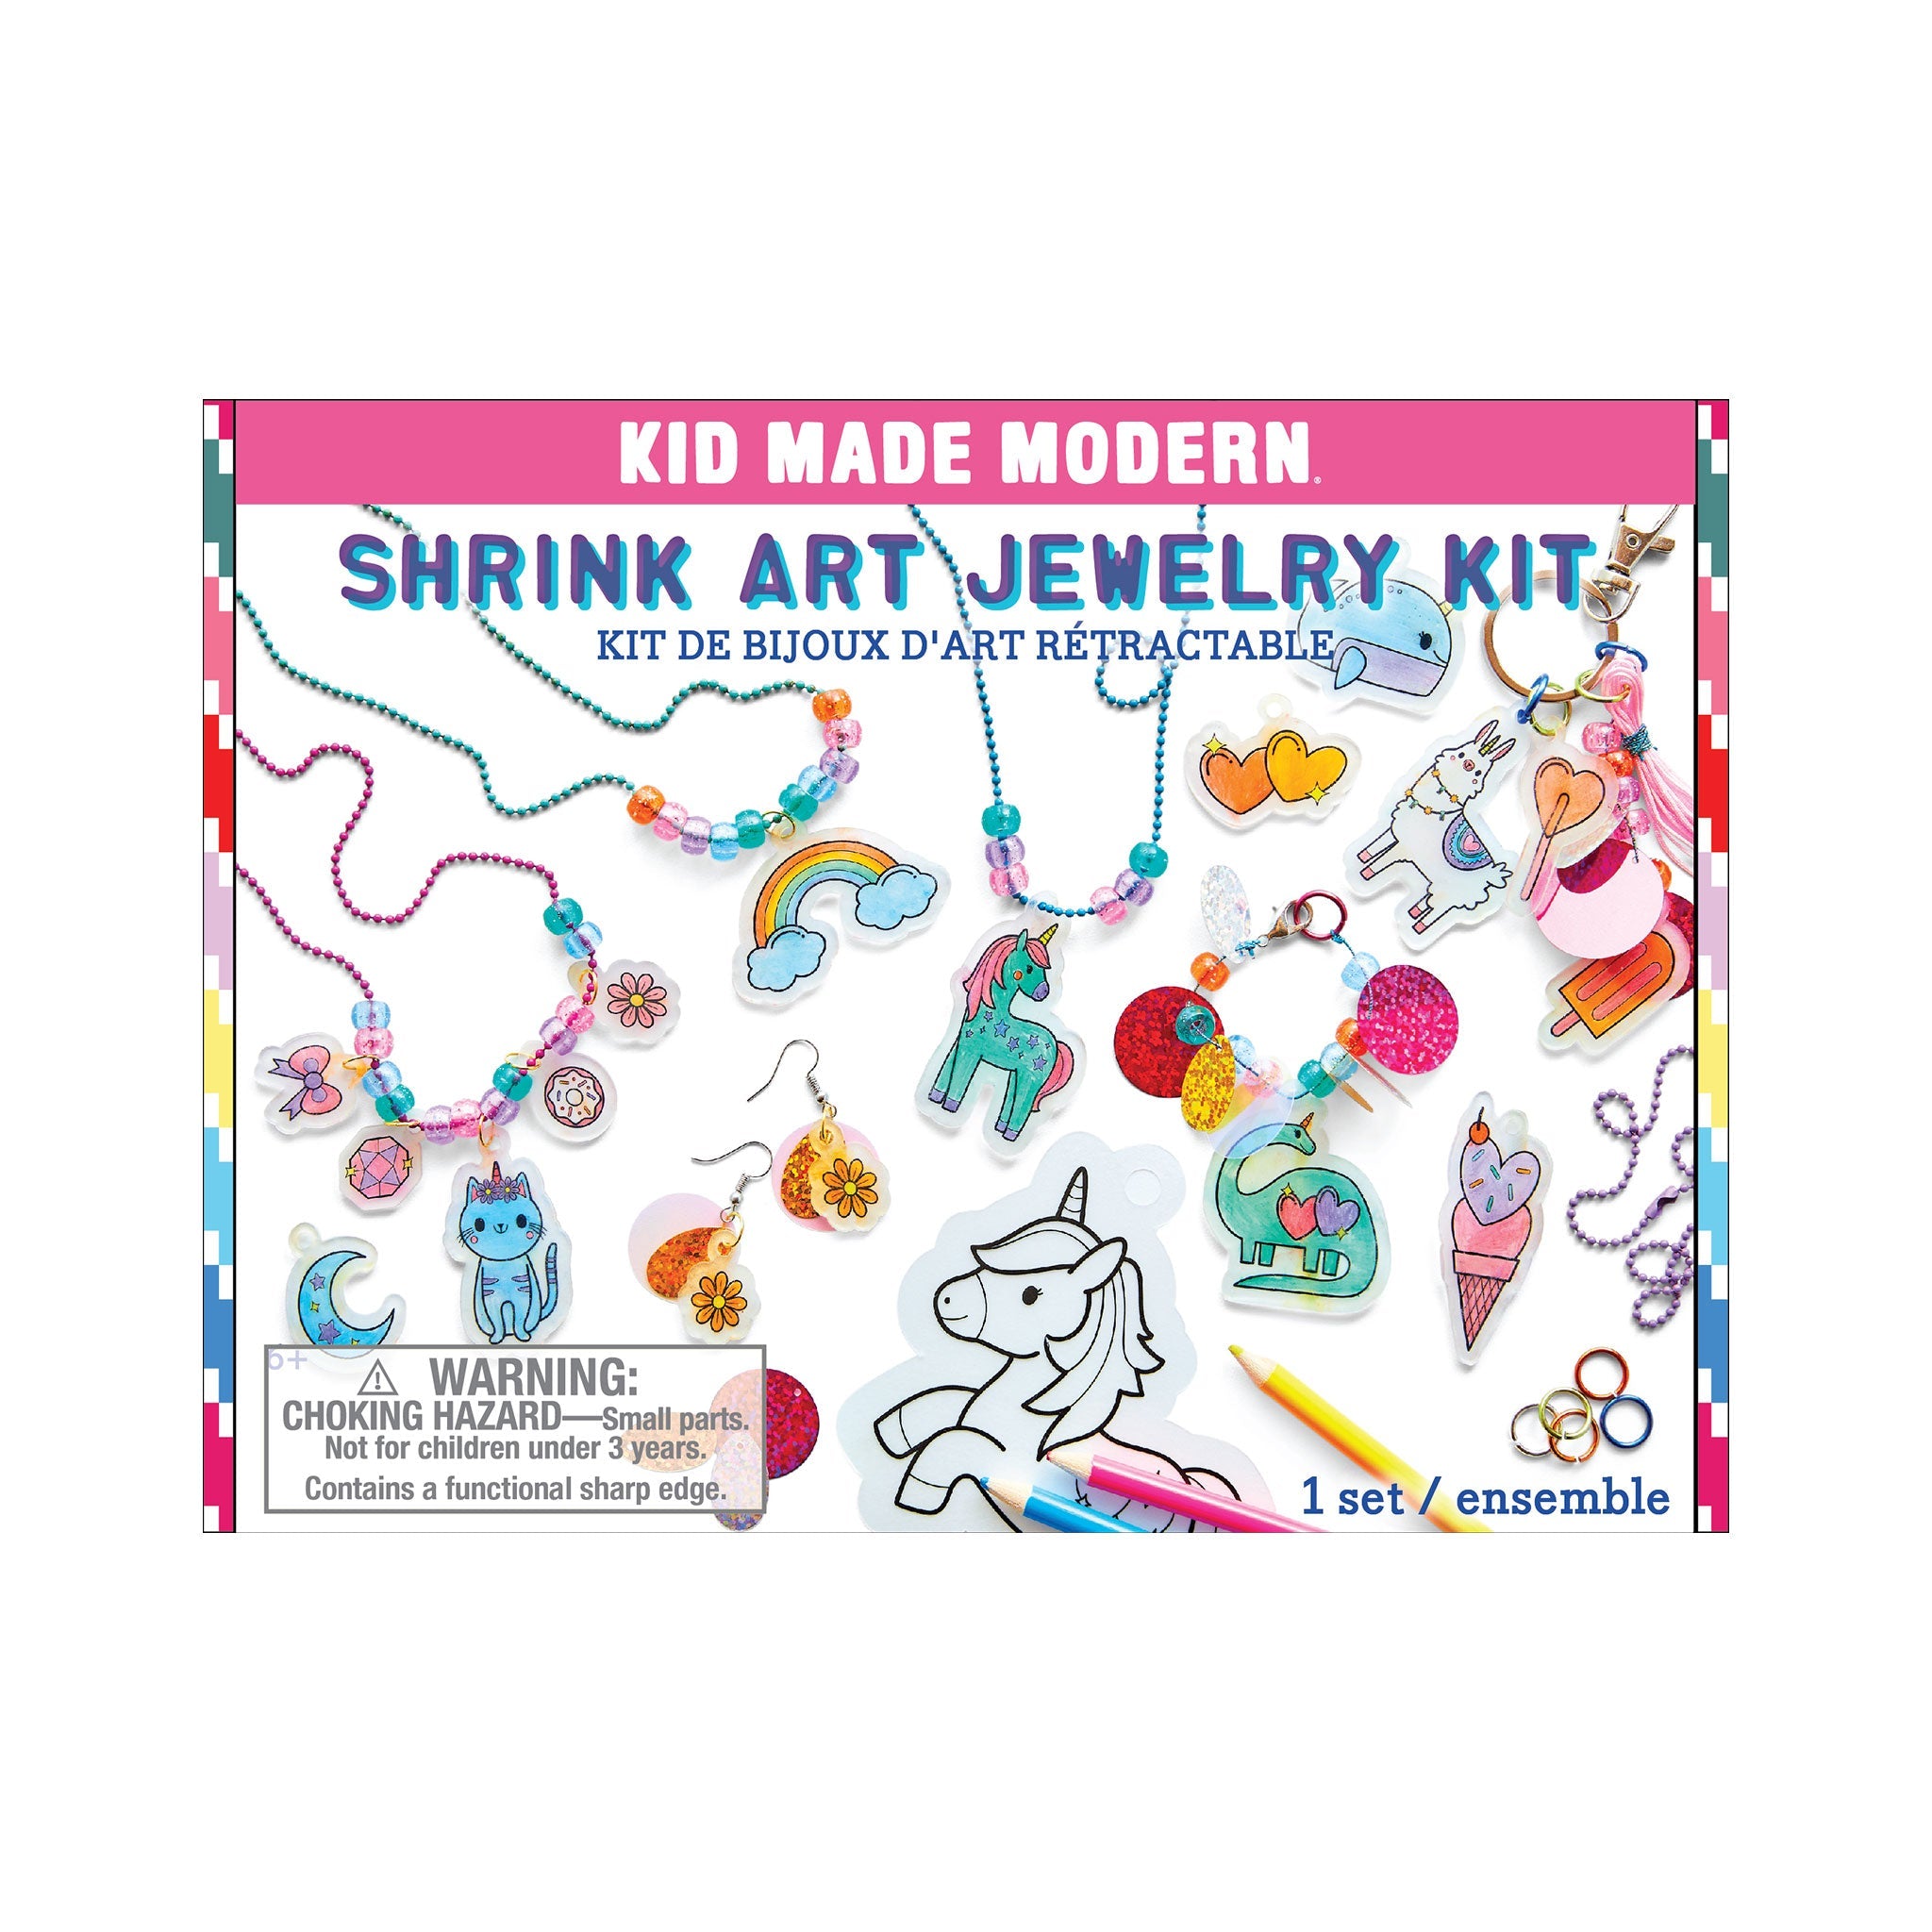 Kid Made Modern Shrink Art Jewelry Kit Art Kits